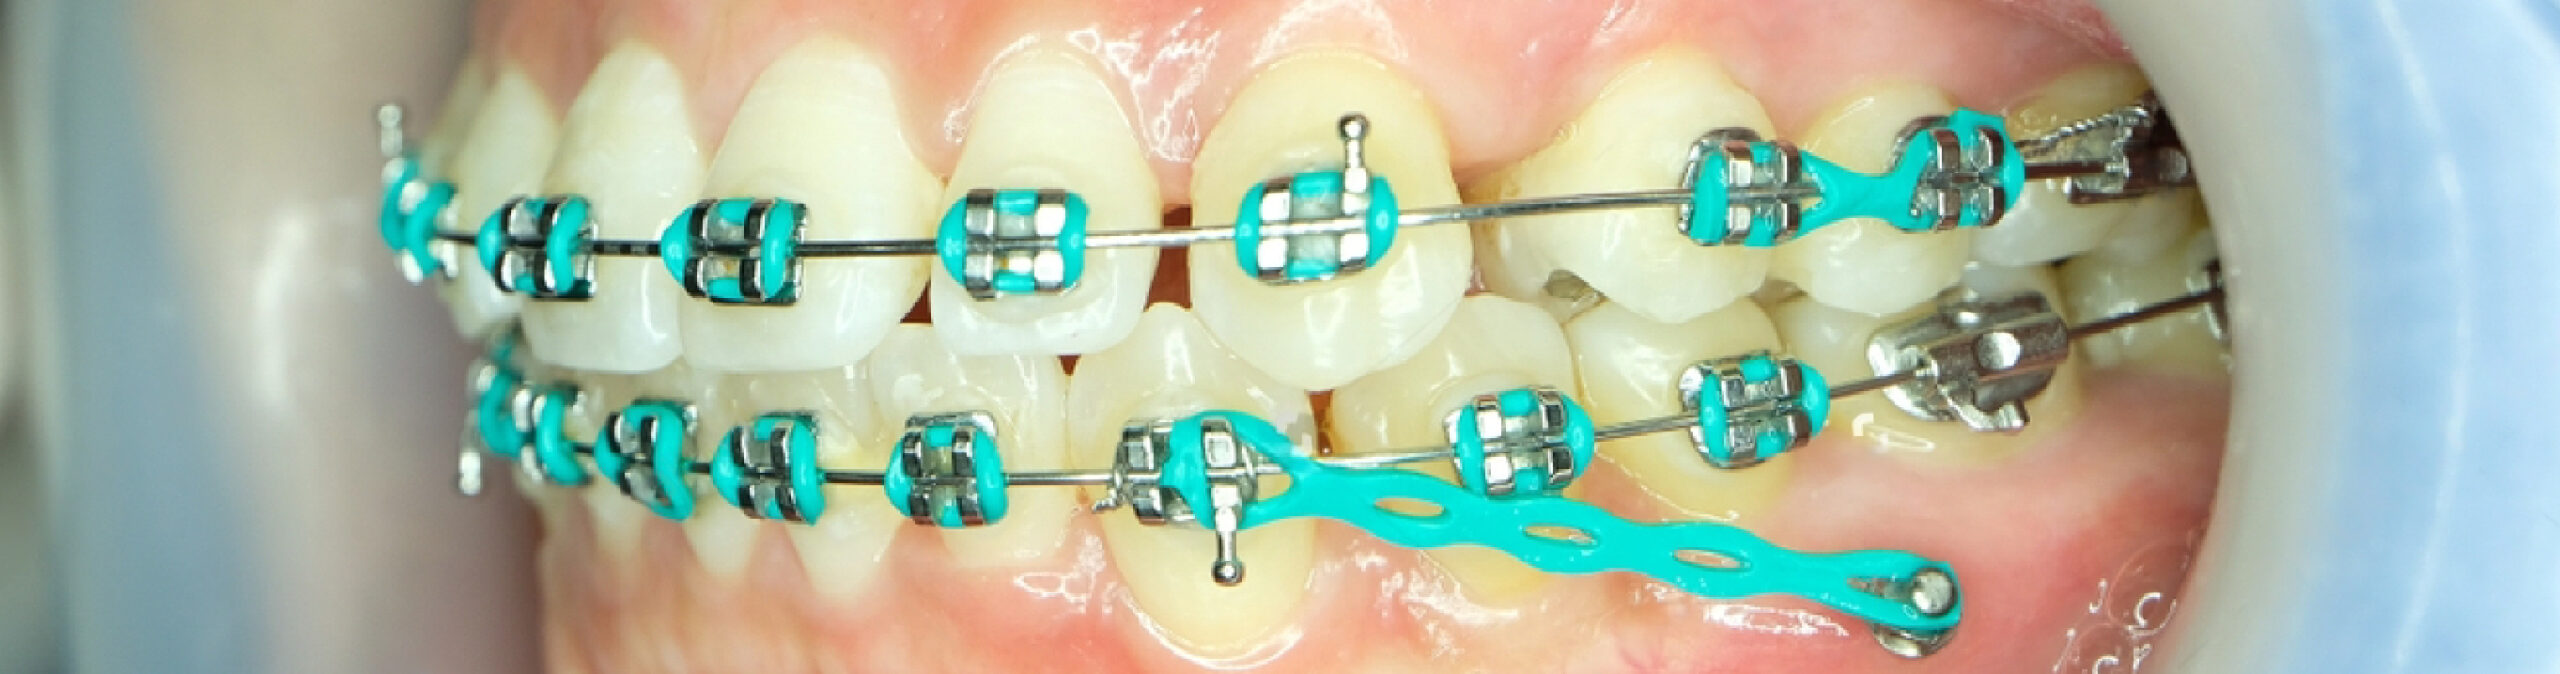 Dispositivos temporales de anclaje y las fuerzas y efectos en la dentalidad y estructuras circundantes durante un tratamiento de ortodoncia.